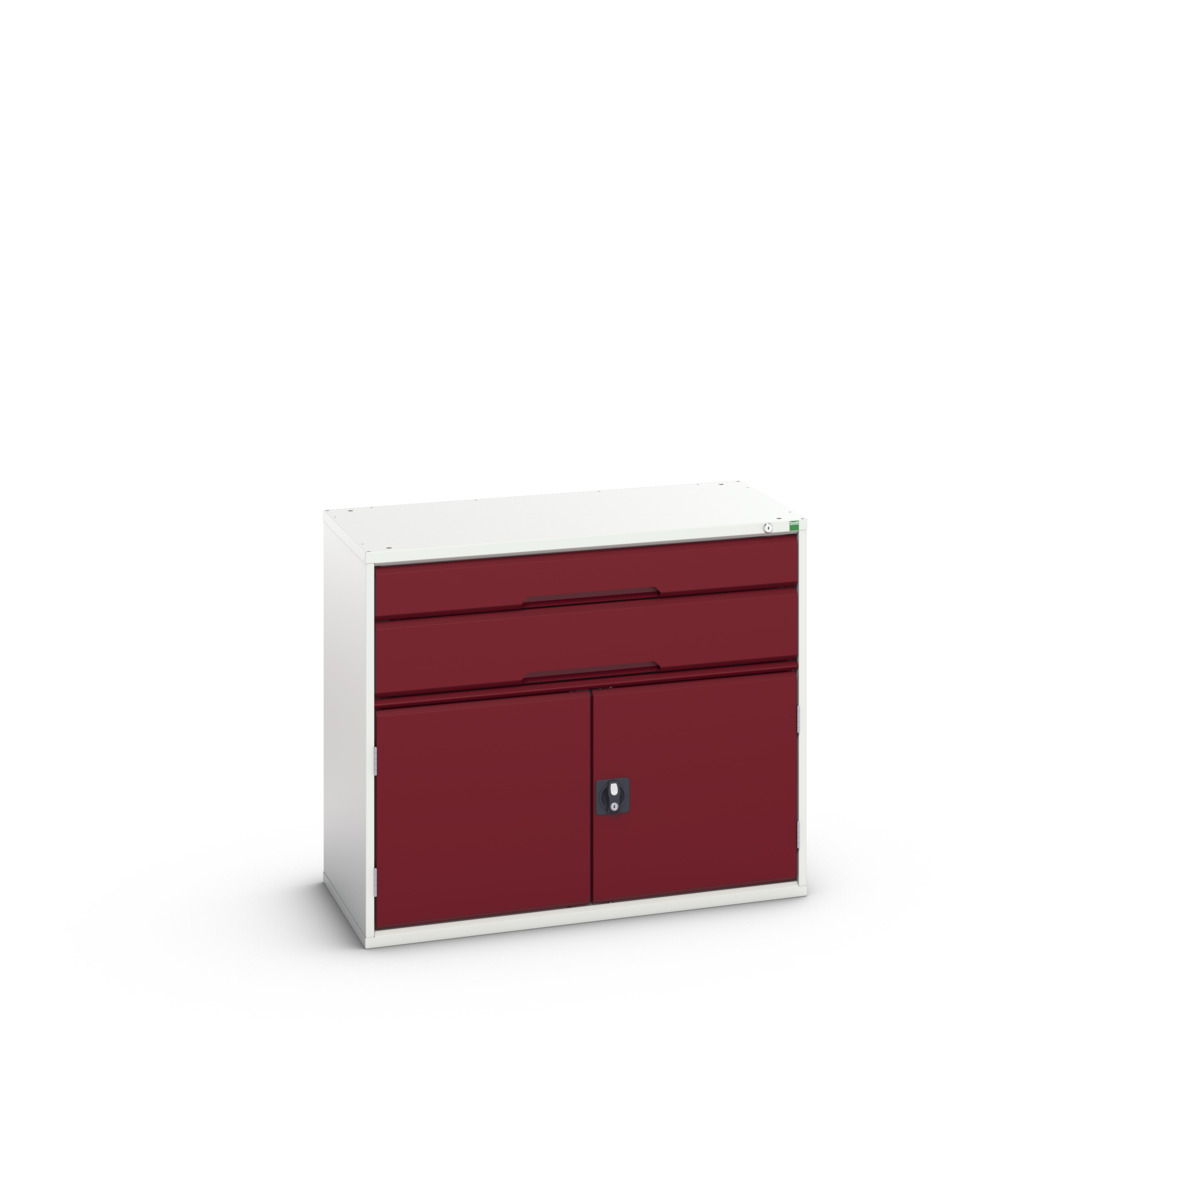 16925237.24 - verso drawer-door cabinet